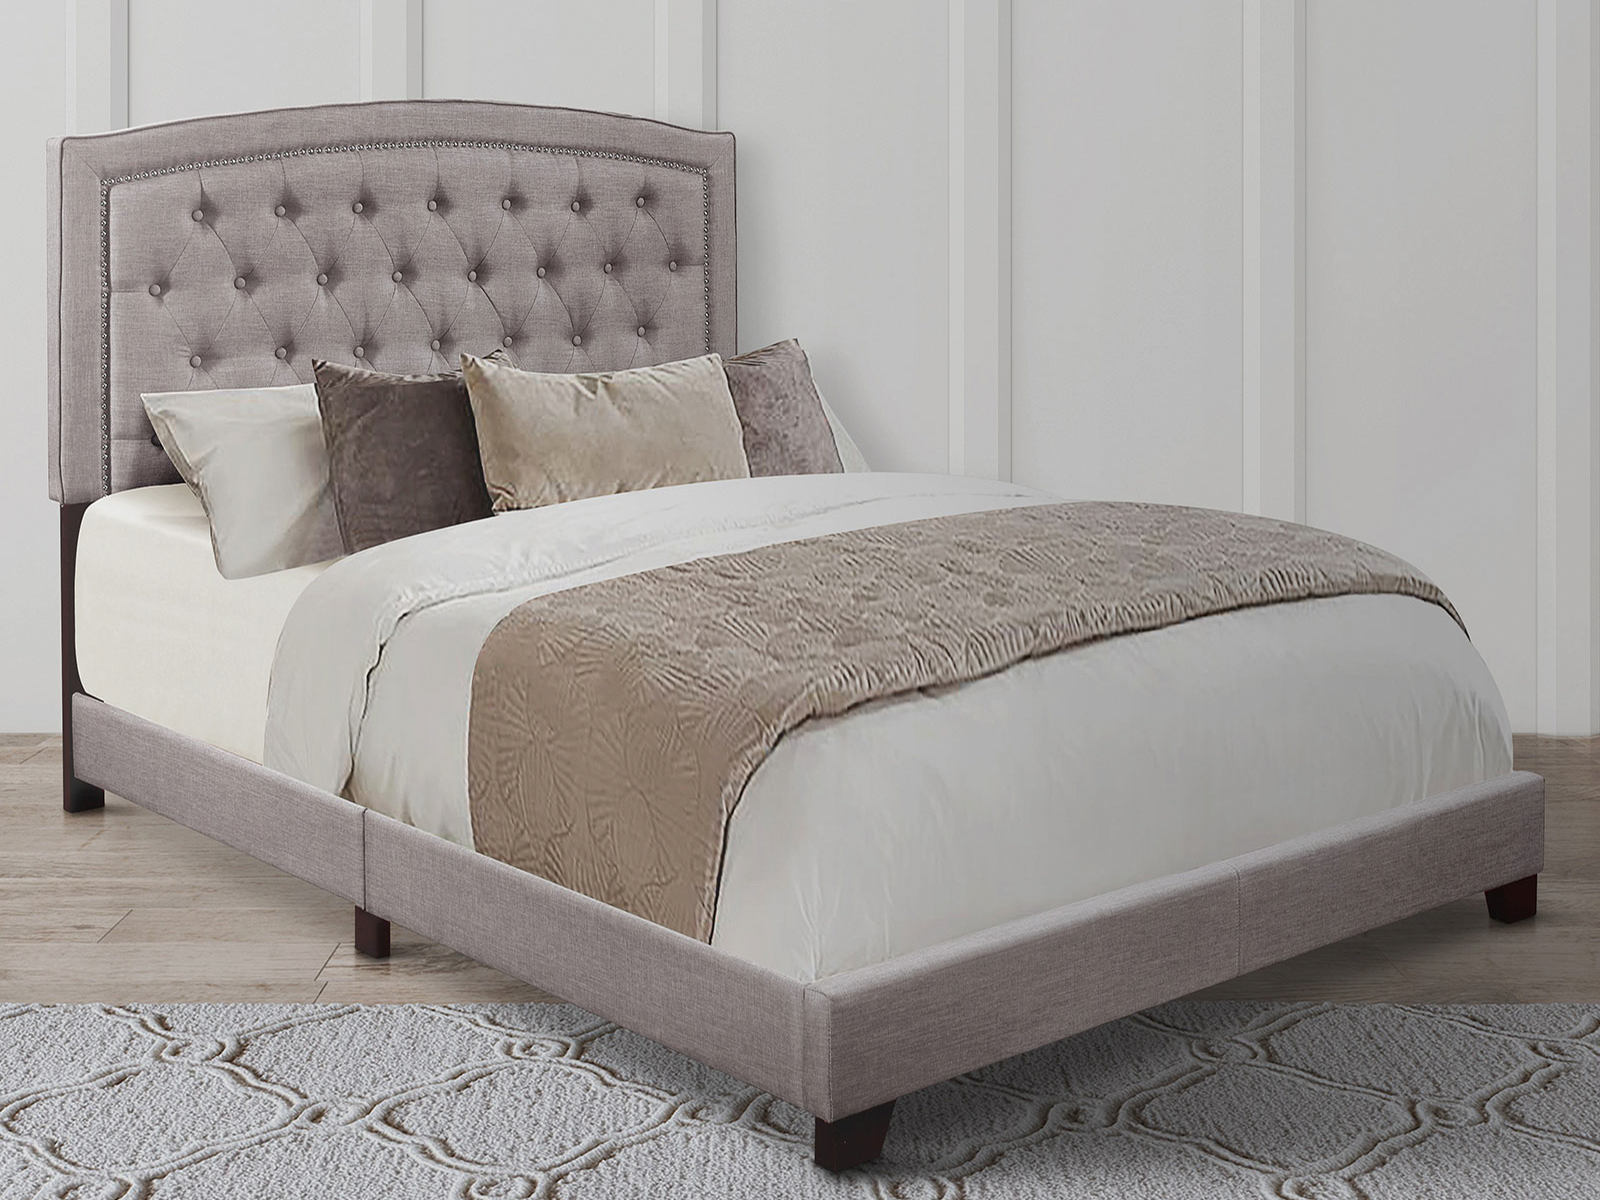 Homelegance Upholstered Bed Set | Queen | Linden Bed Frame & Headboard | Gray